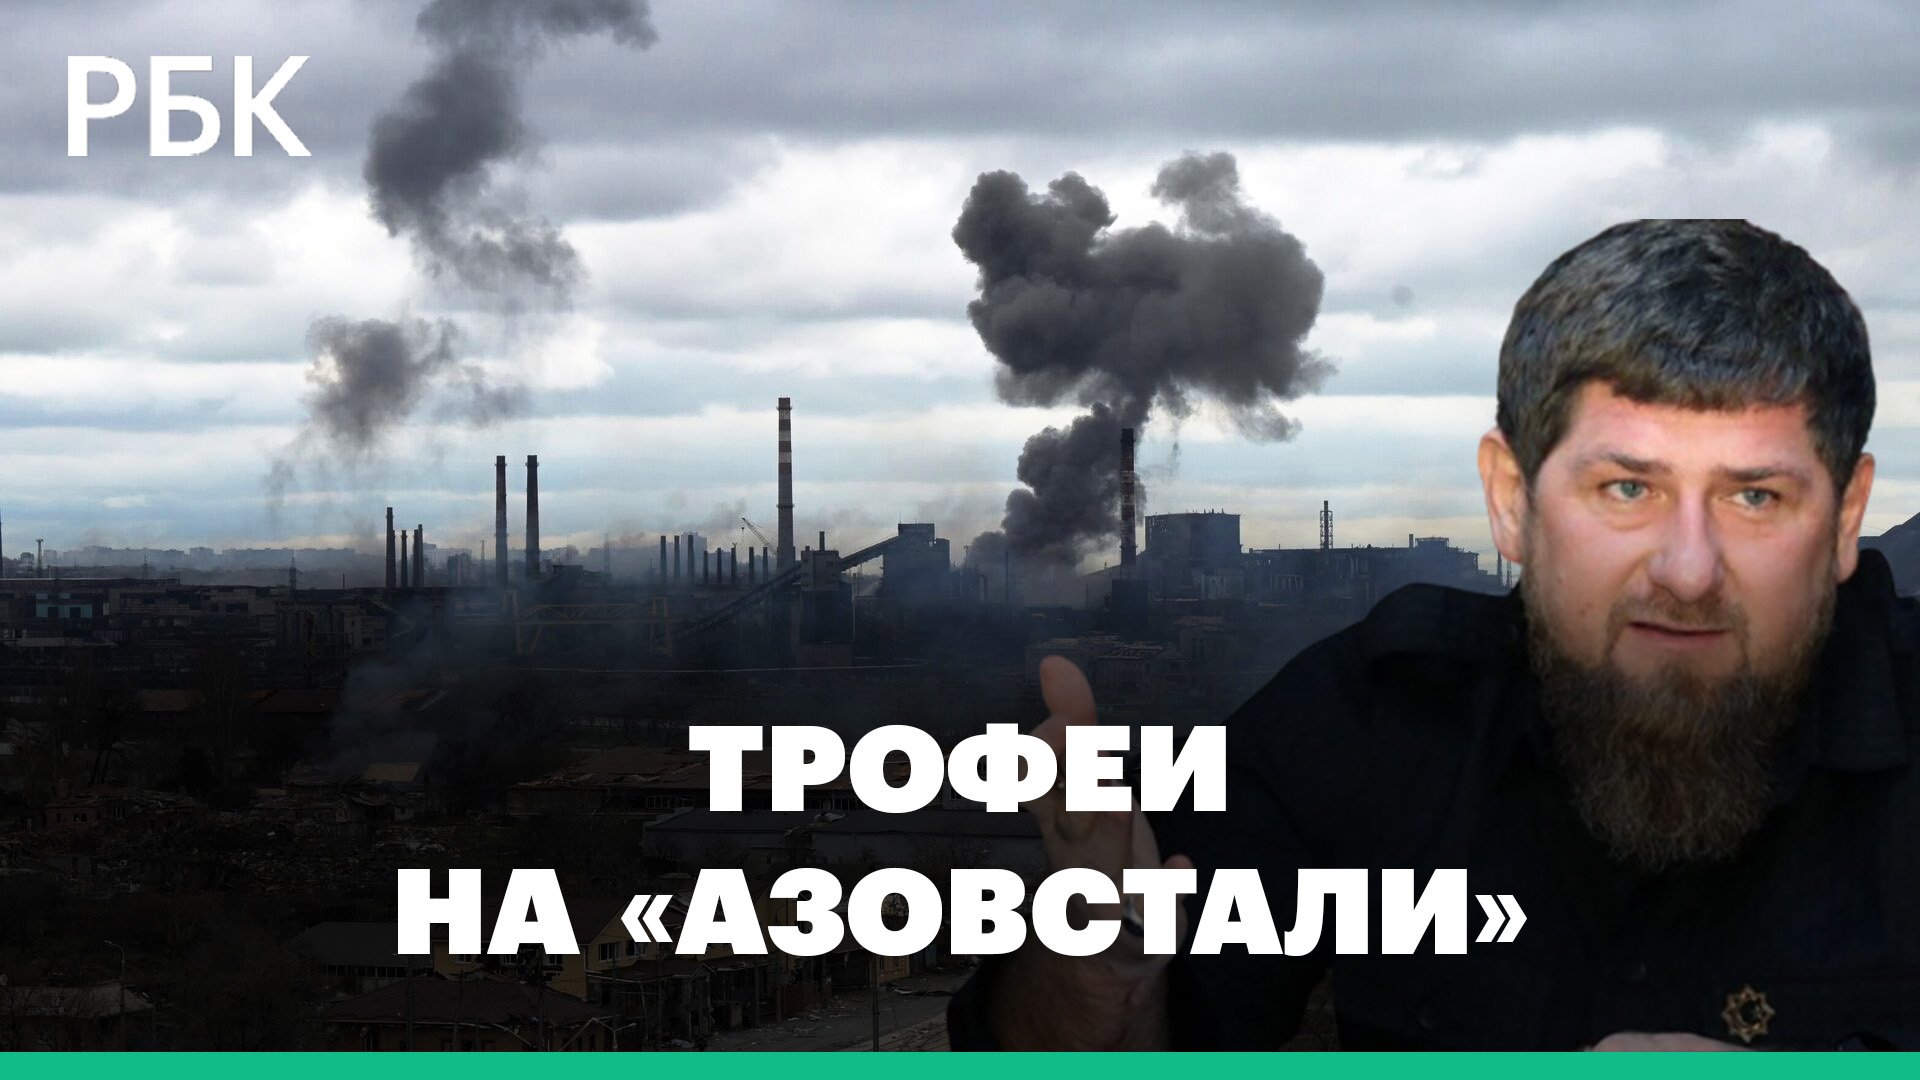 Кадыров сообщил о «зачистке» на «Азовстали» и показал захваченную украинскую военную технику